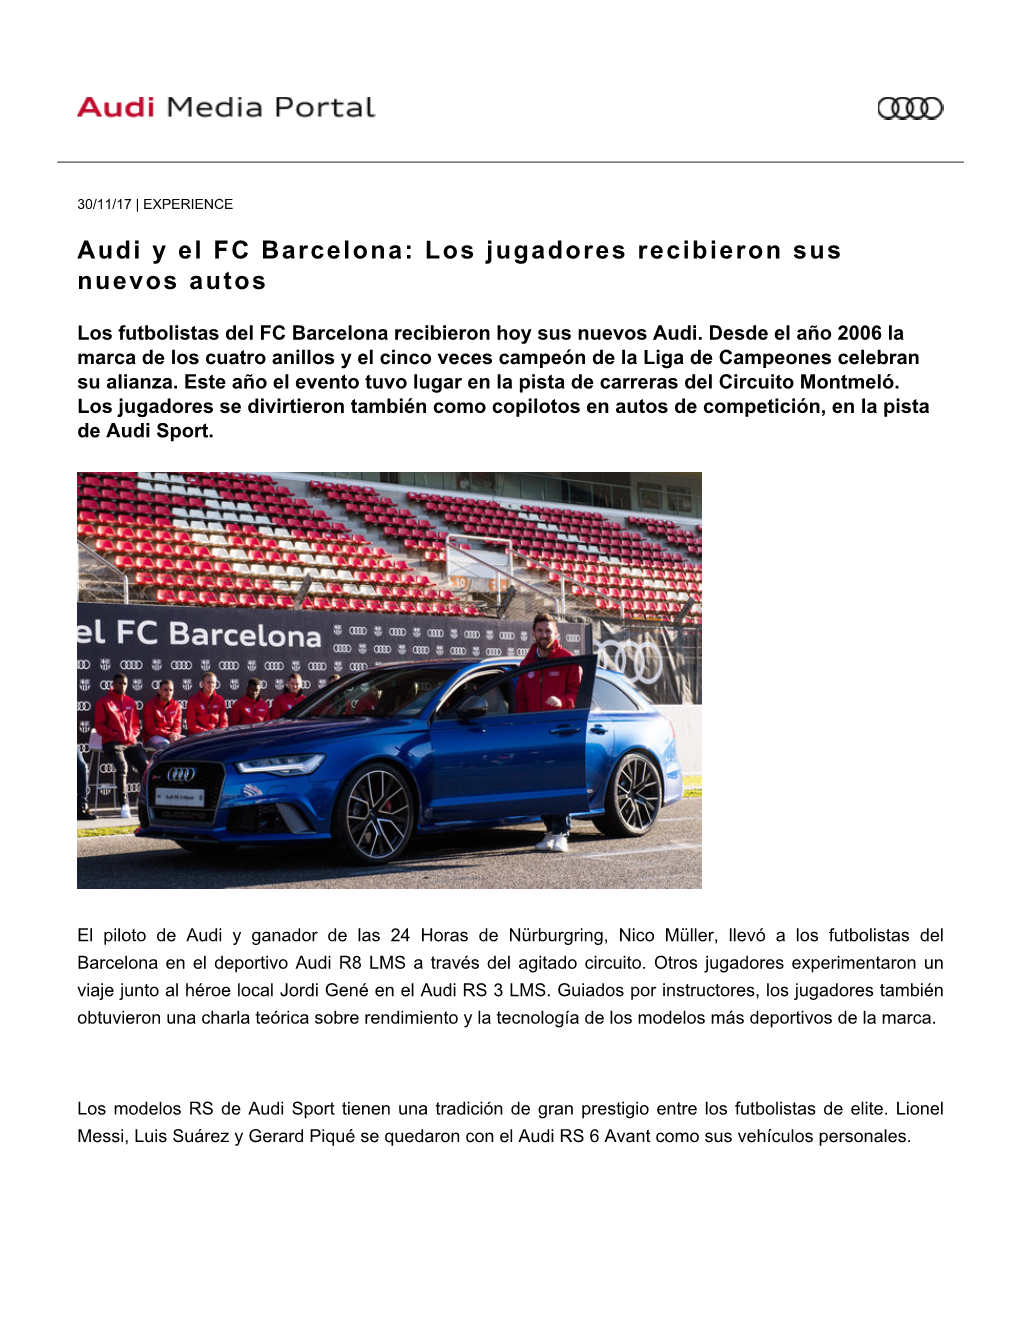 Audi Y El FC Barcelona: Los Jugadores Recibieron Sus Nuevos Autos